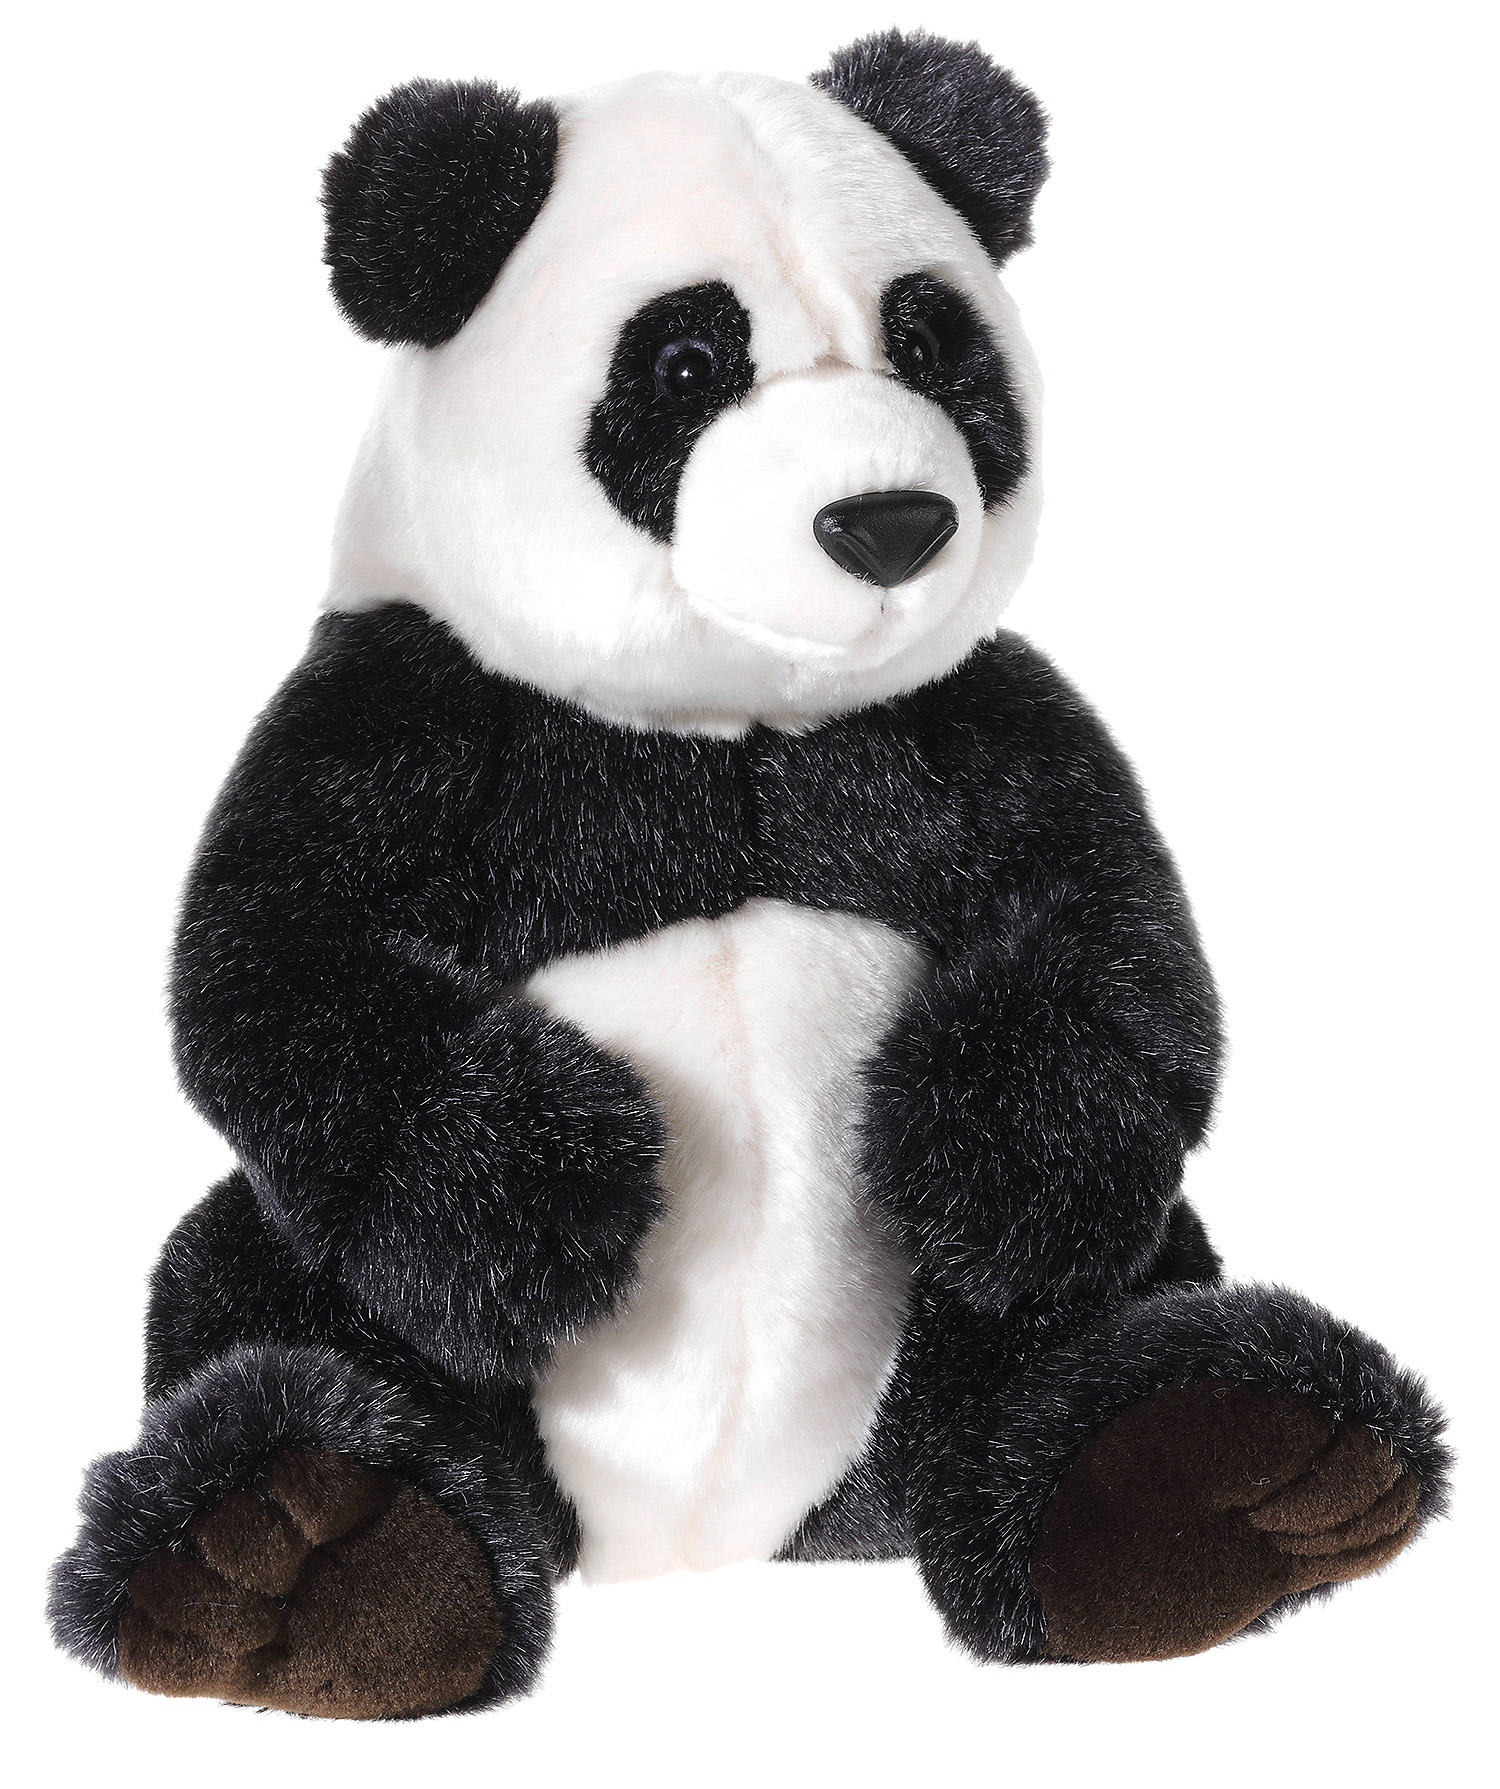 Heunec Pandabär aus der Misanimo Serie in 28cm Größe sitzend